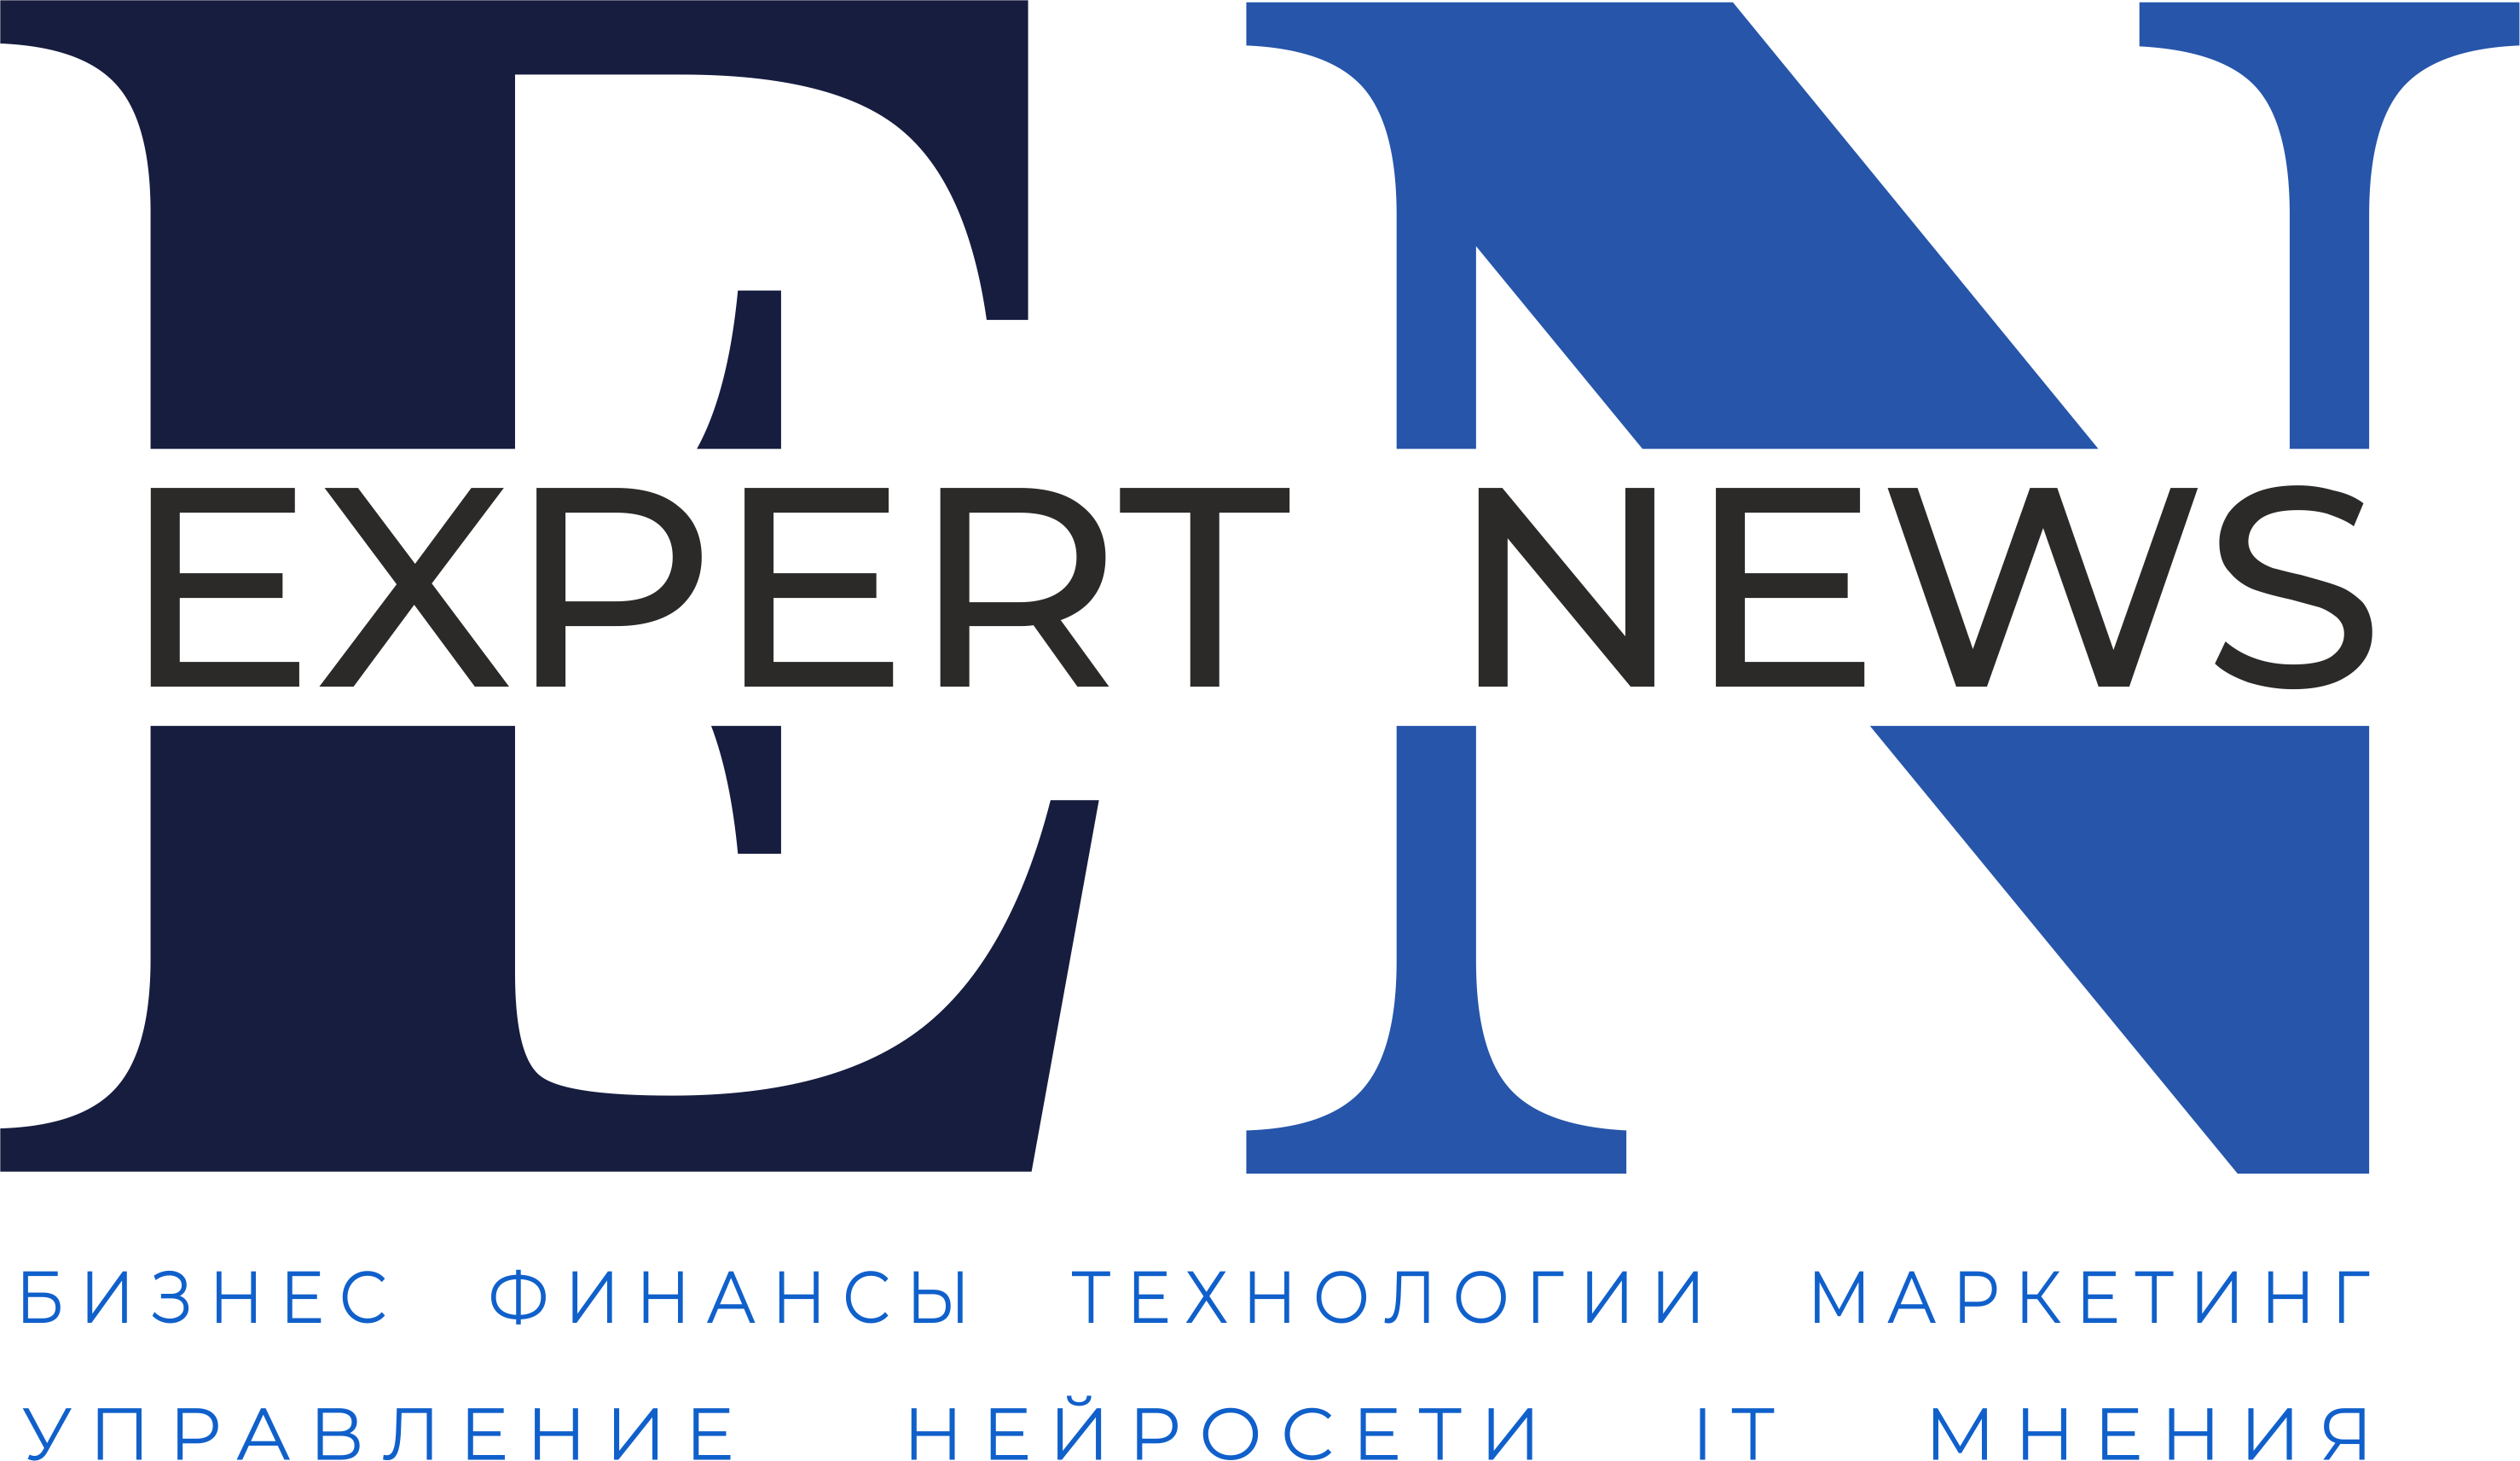 Еxpertnews.pro